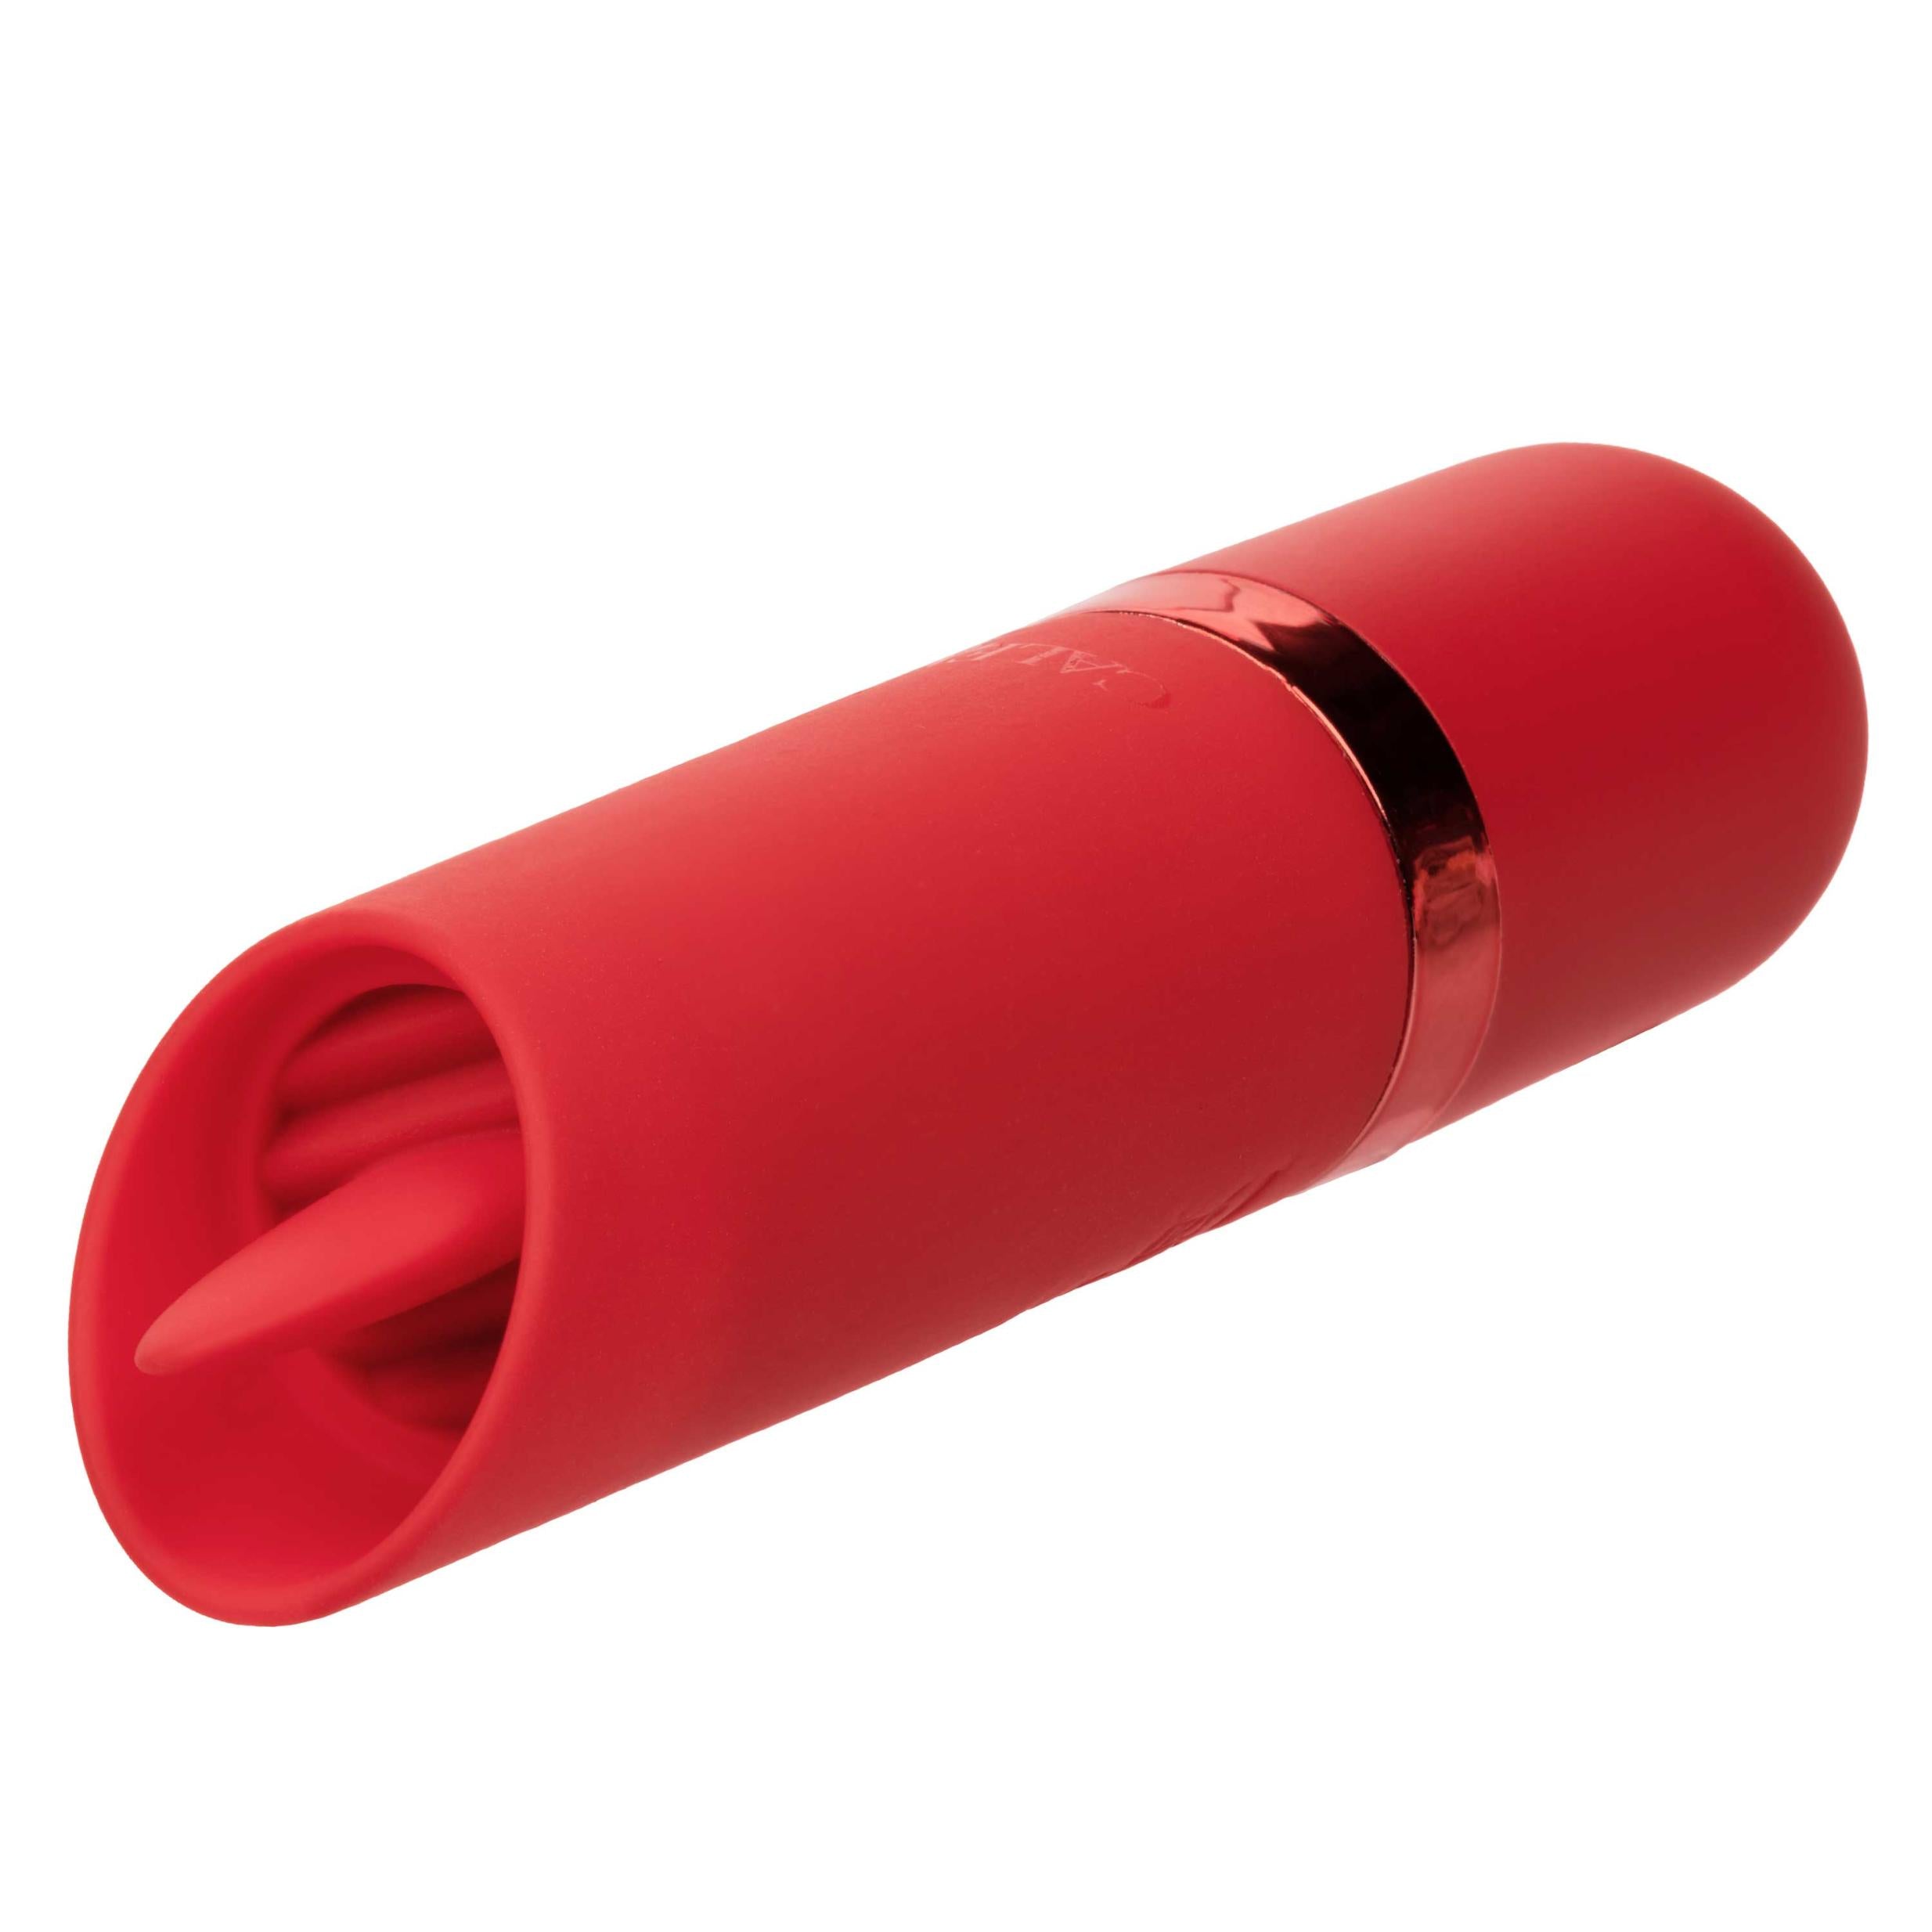 Kyst Flicker Bullet Vibrator - Red